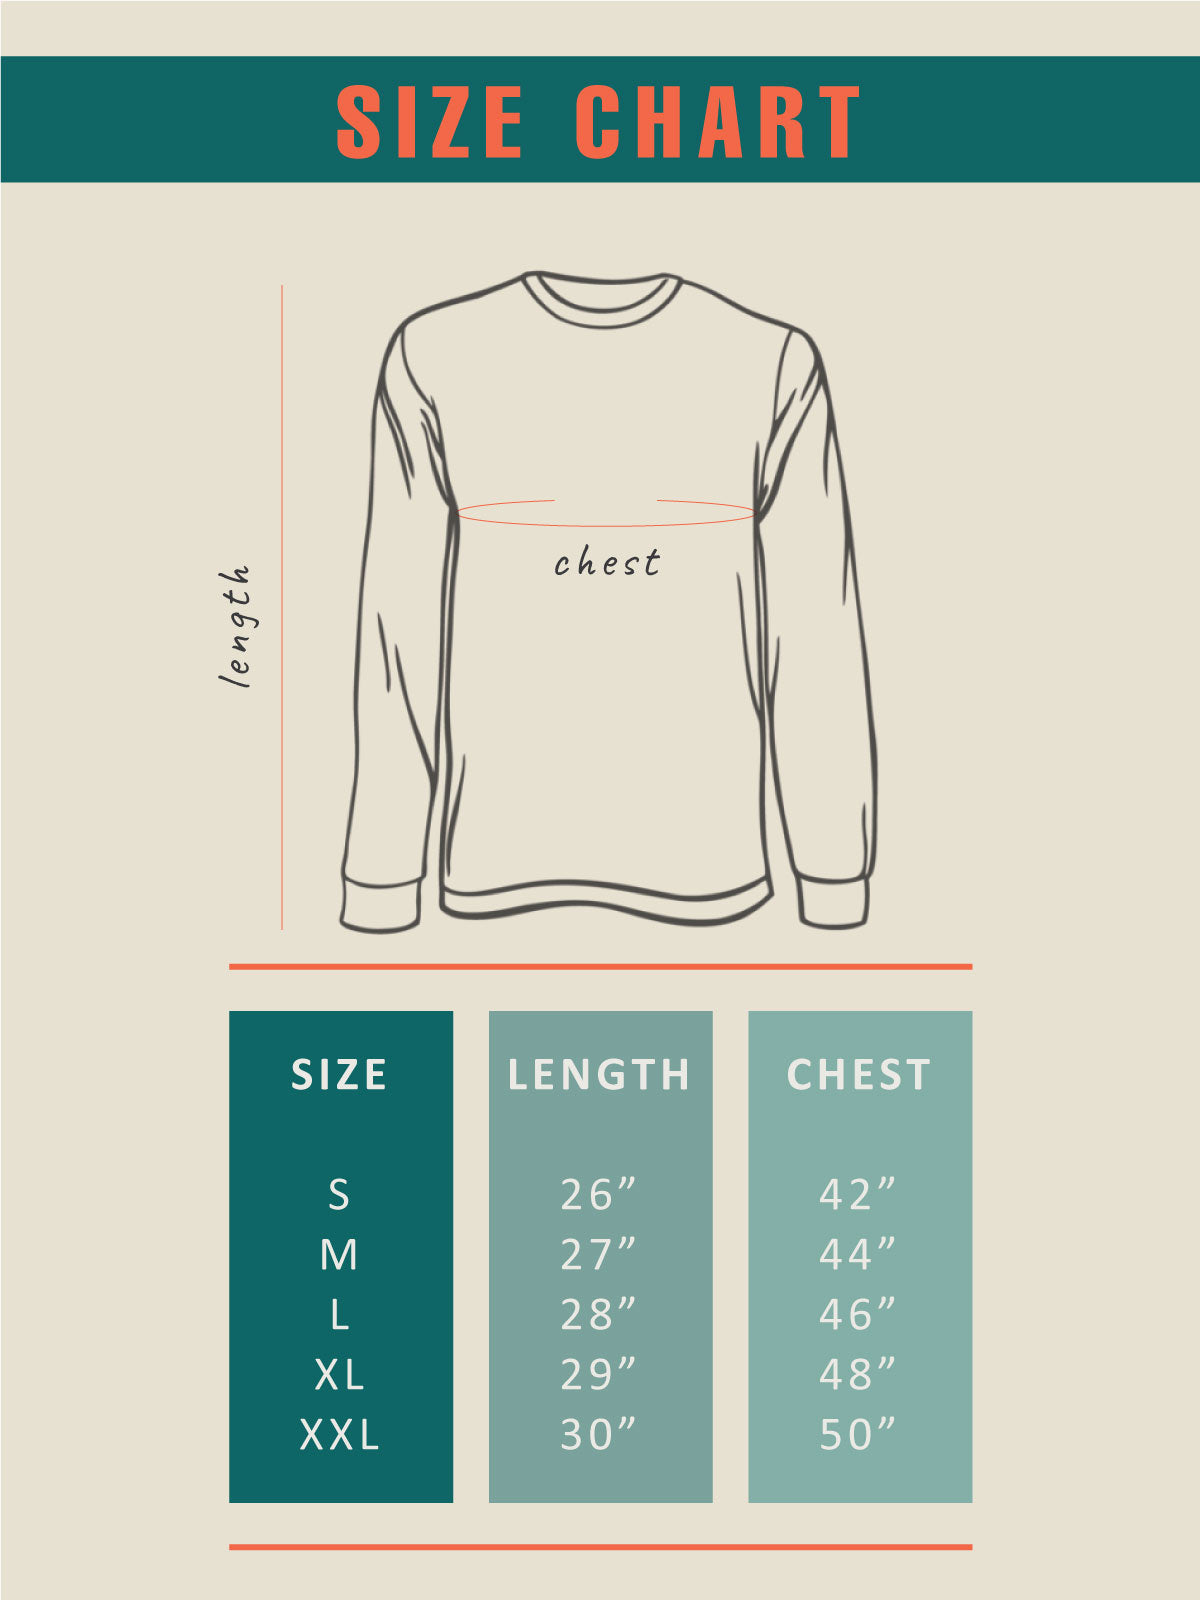 Forest Sunshine | Back Printed Unisex Sweatshirt